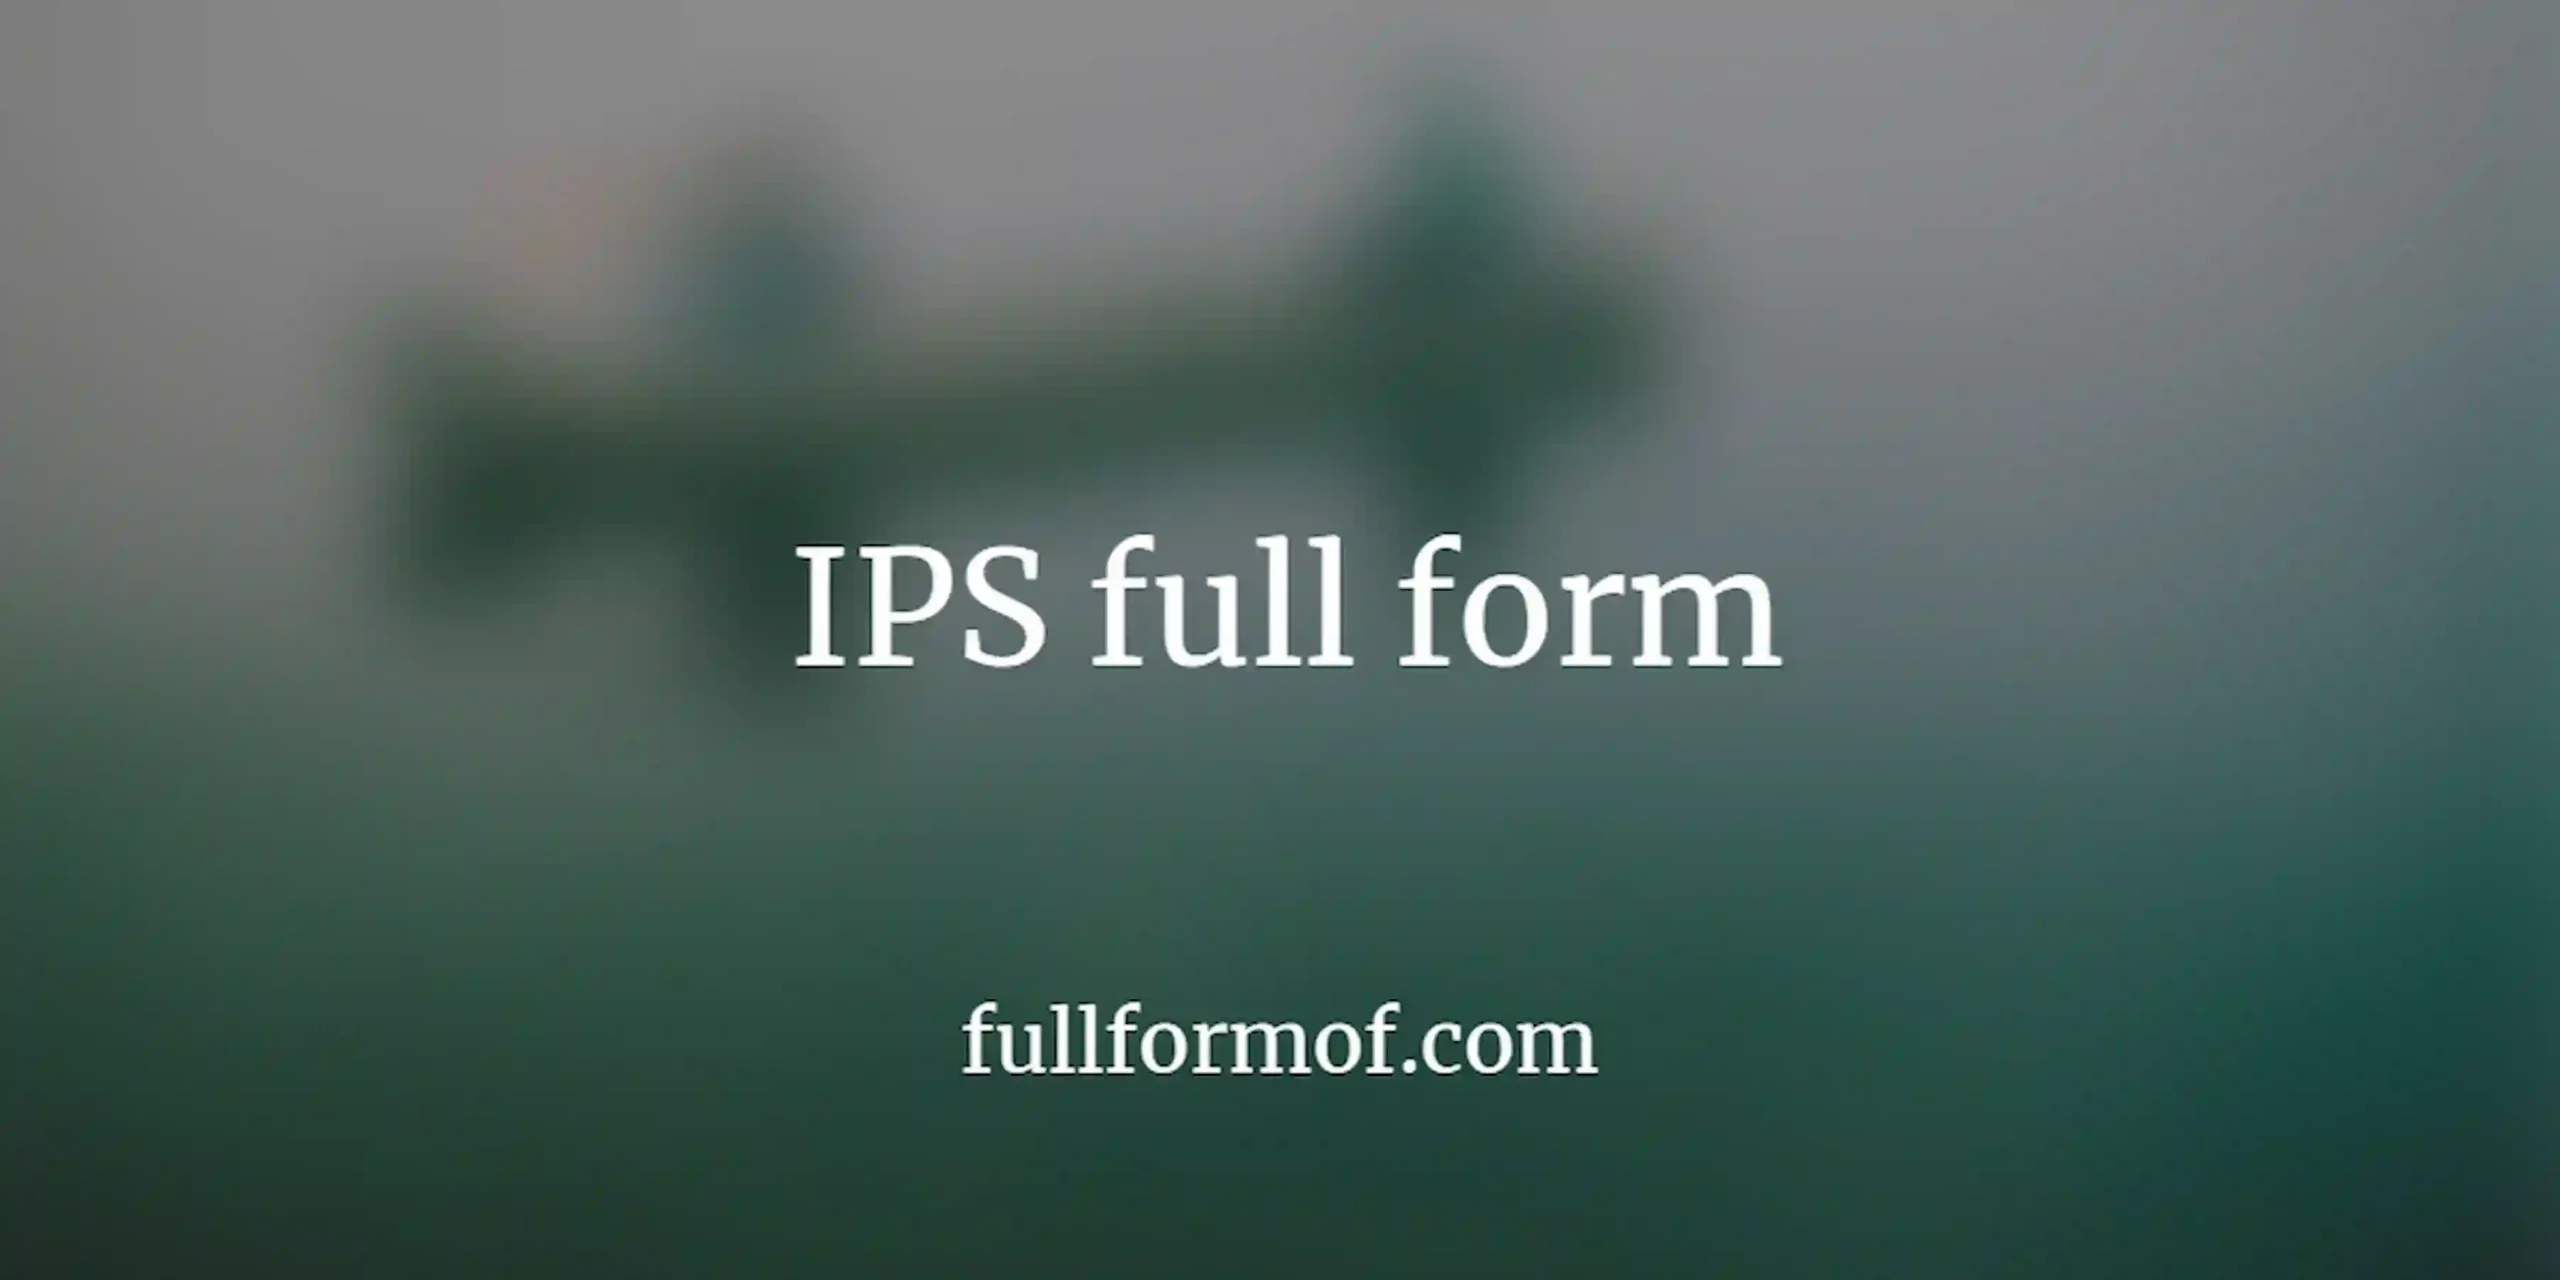 IPS full form